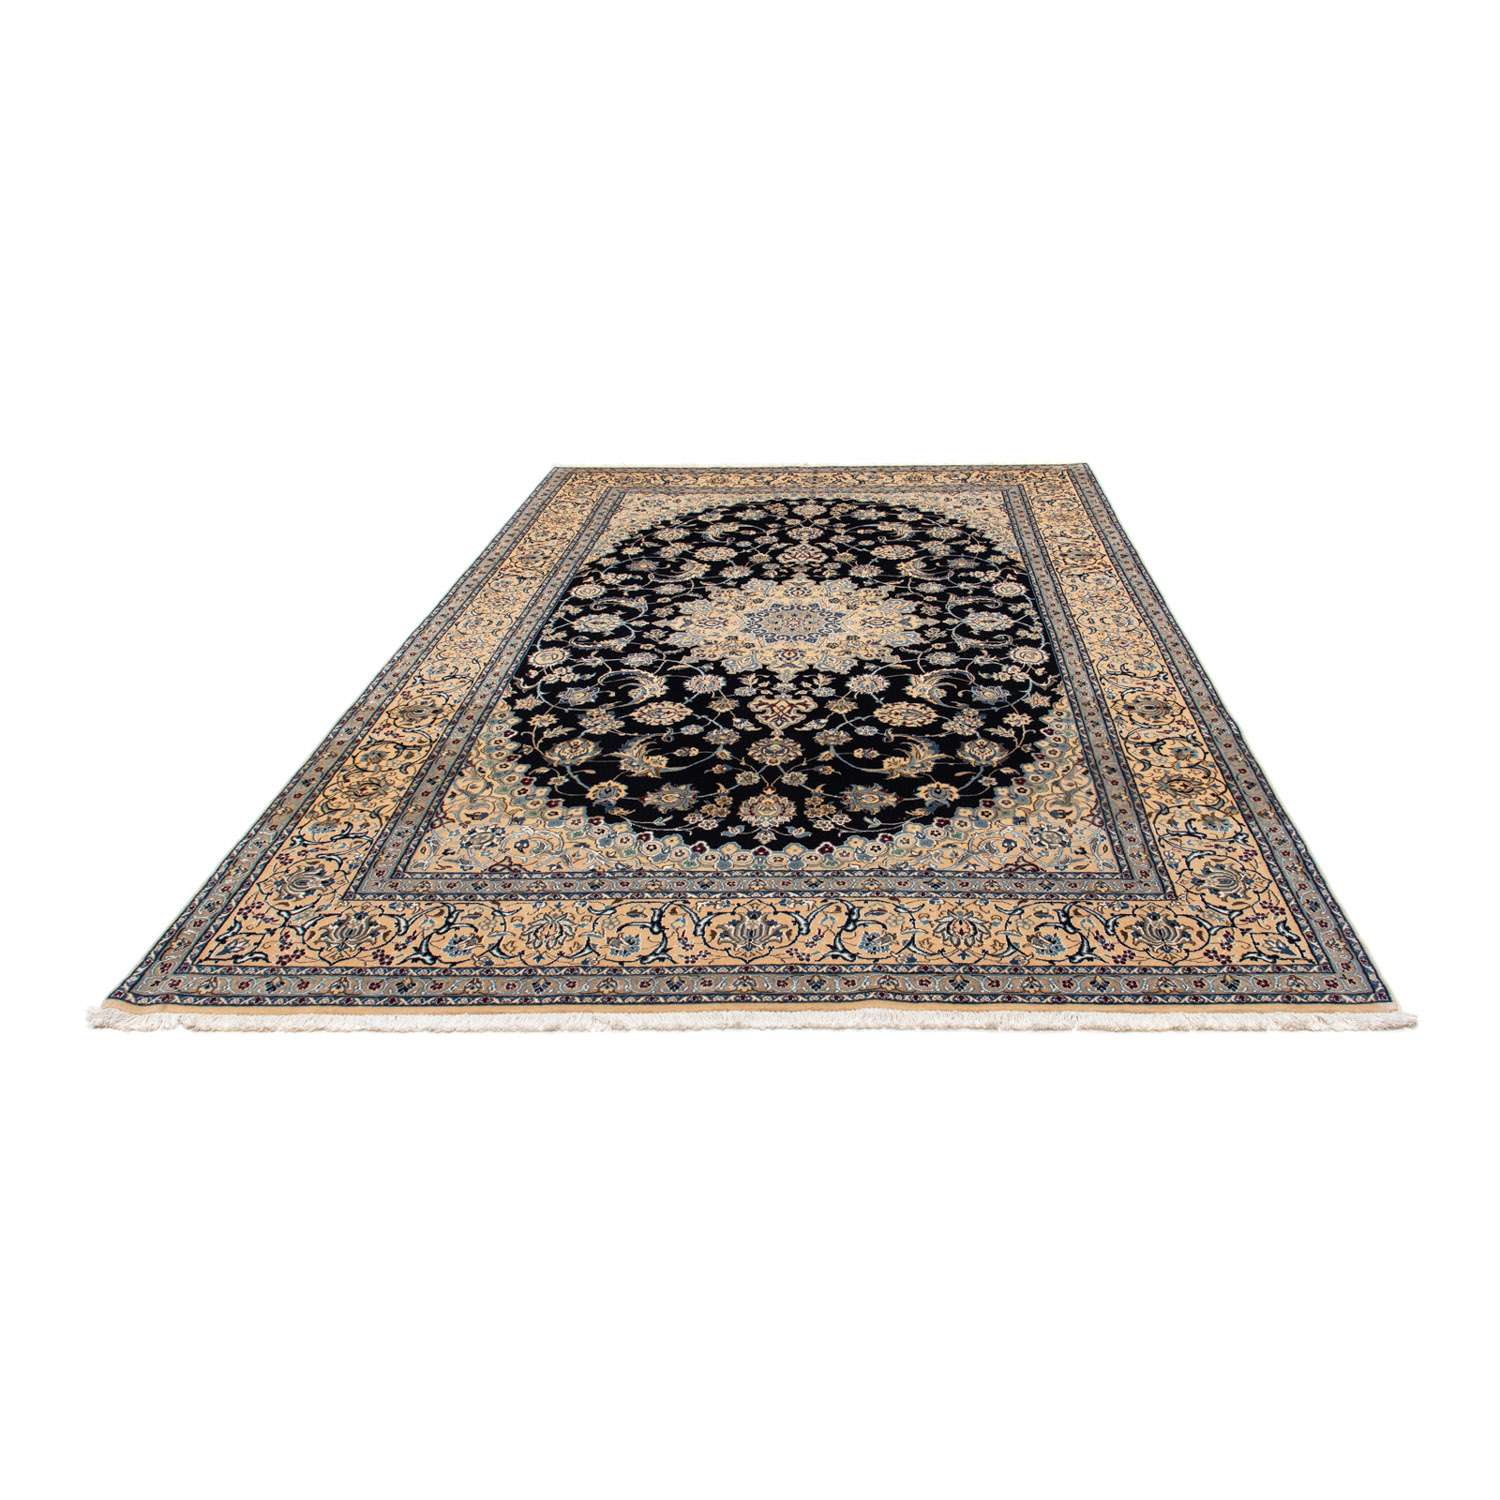 Persisk teppe - Nain - Royal - 300 x 205 cm - svart